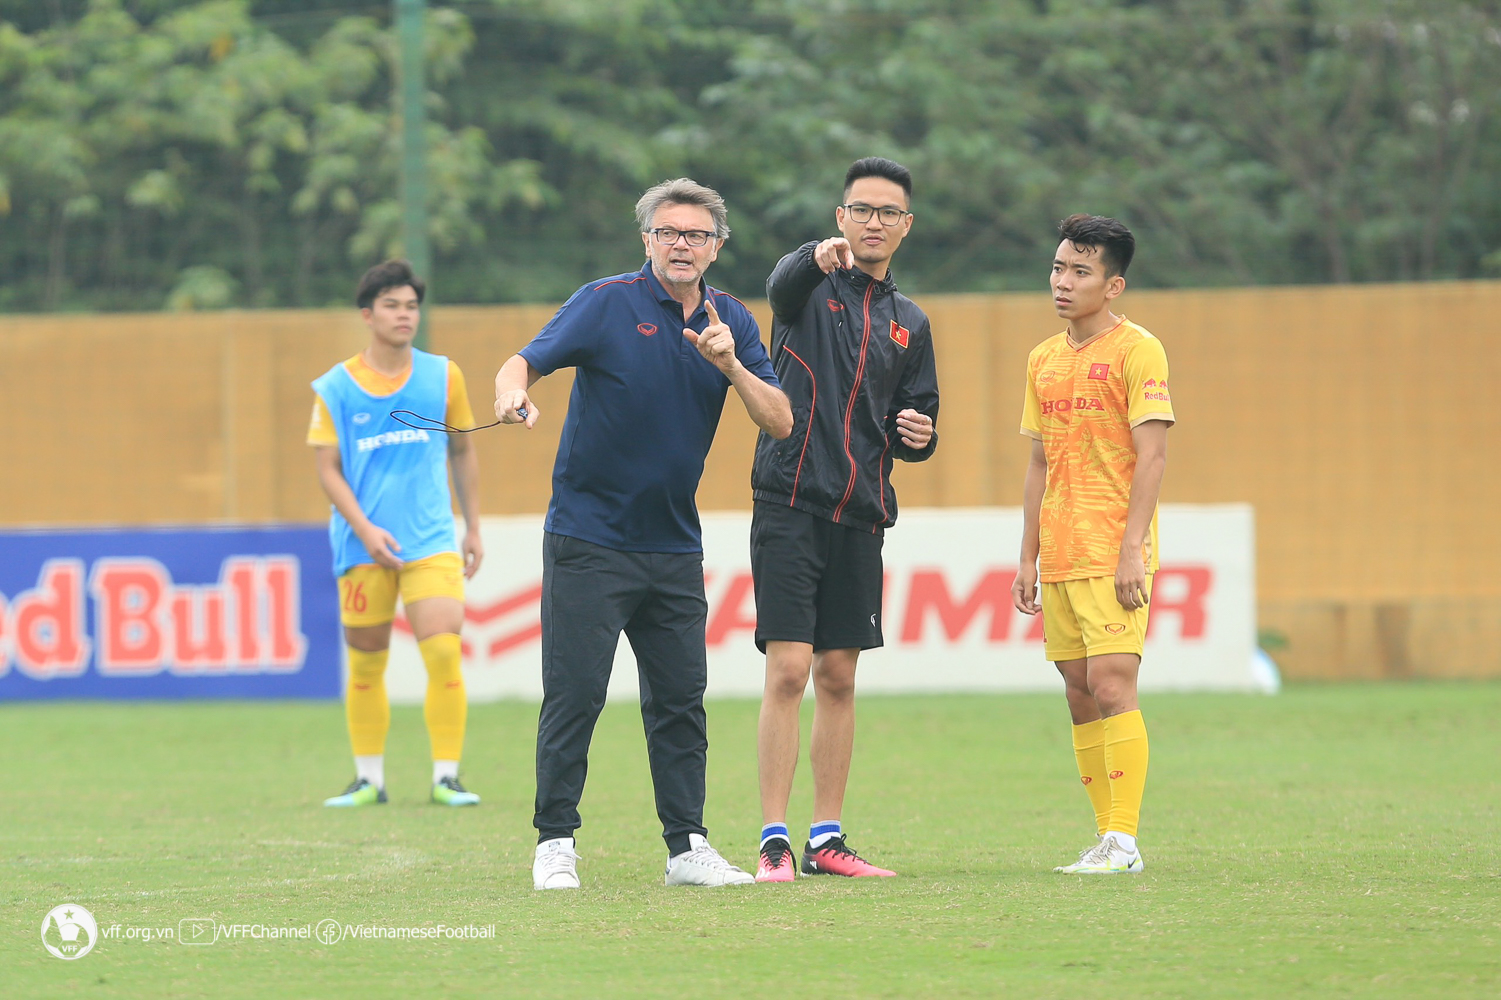 ĐT U23 Việt Nam tích cực tập luyện trước ngày lên đường dự giải quốc tế U23 Cup